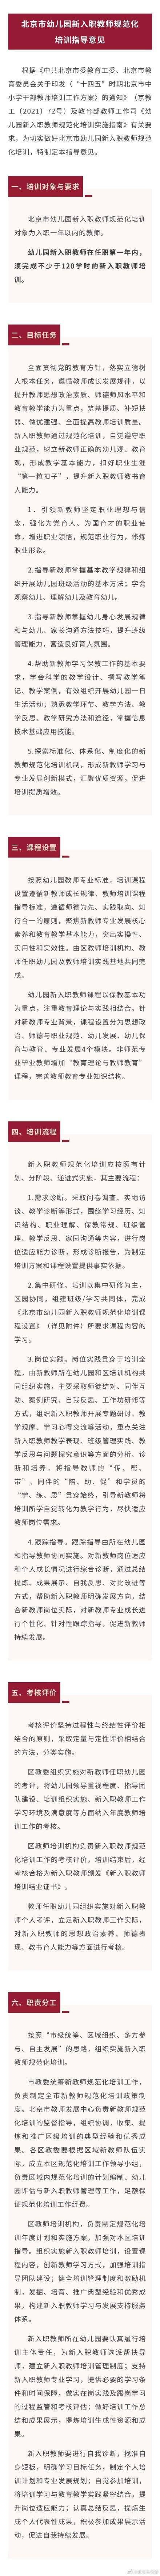 北京幼儿园新入职教师须完成不少于120学时培训